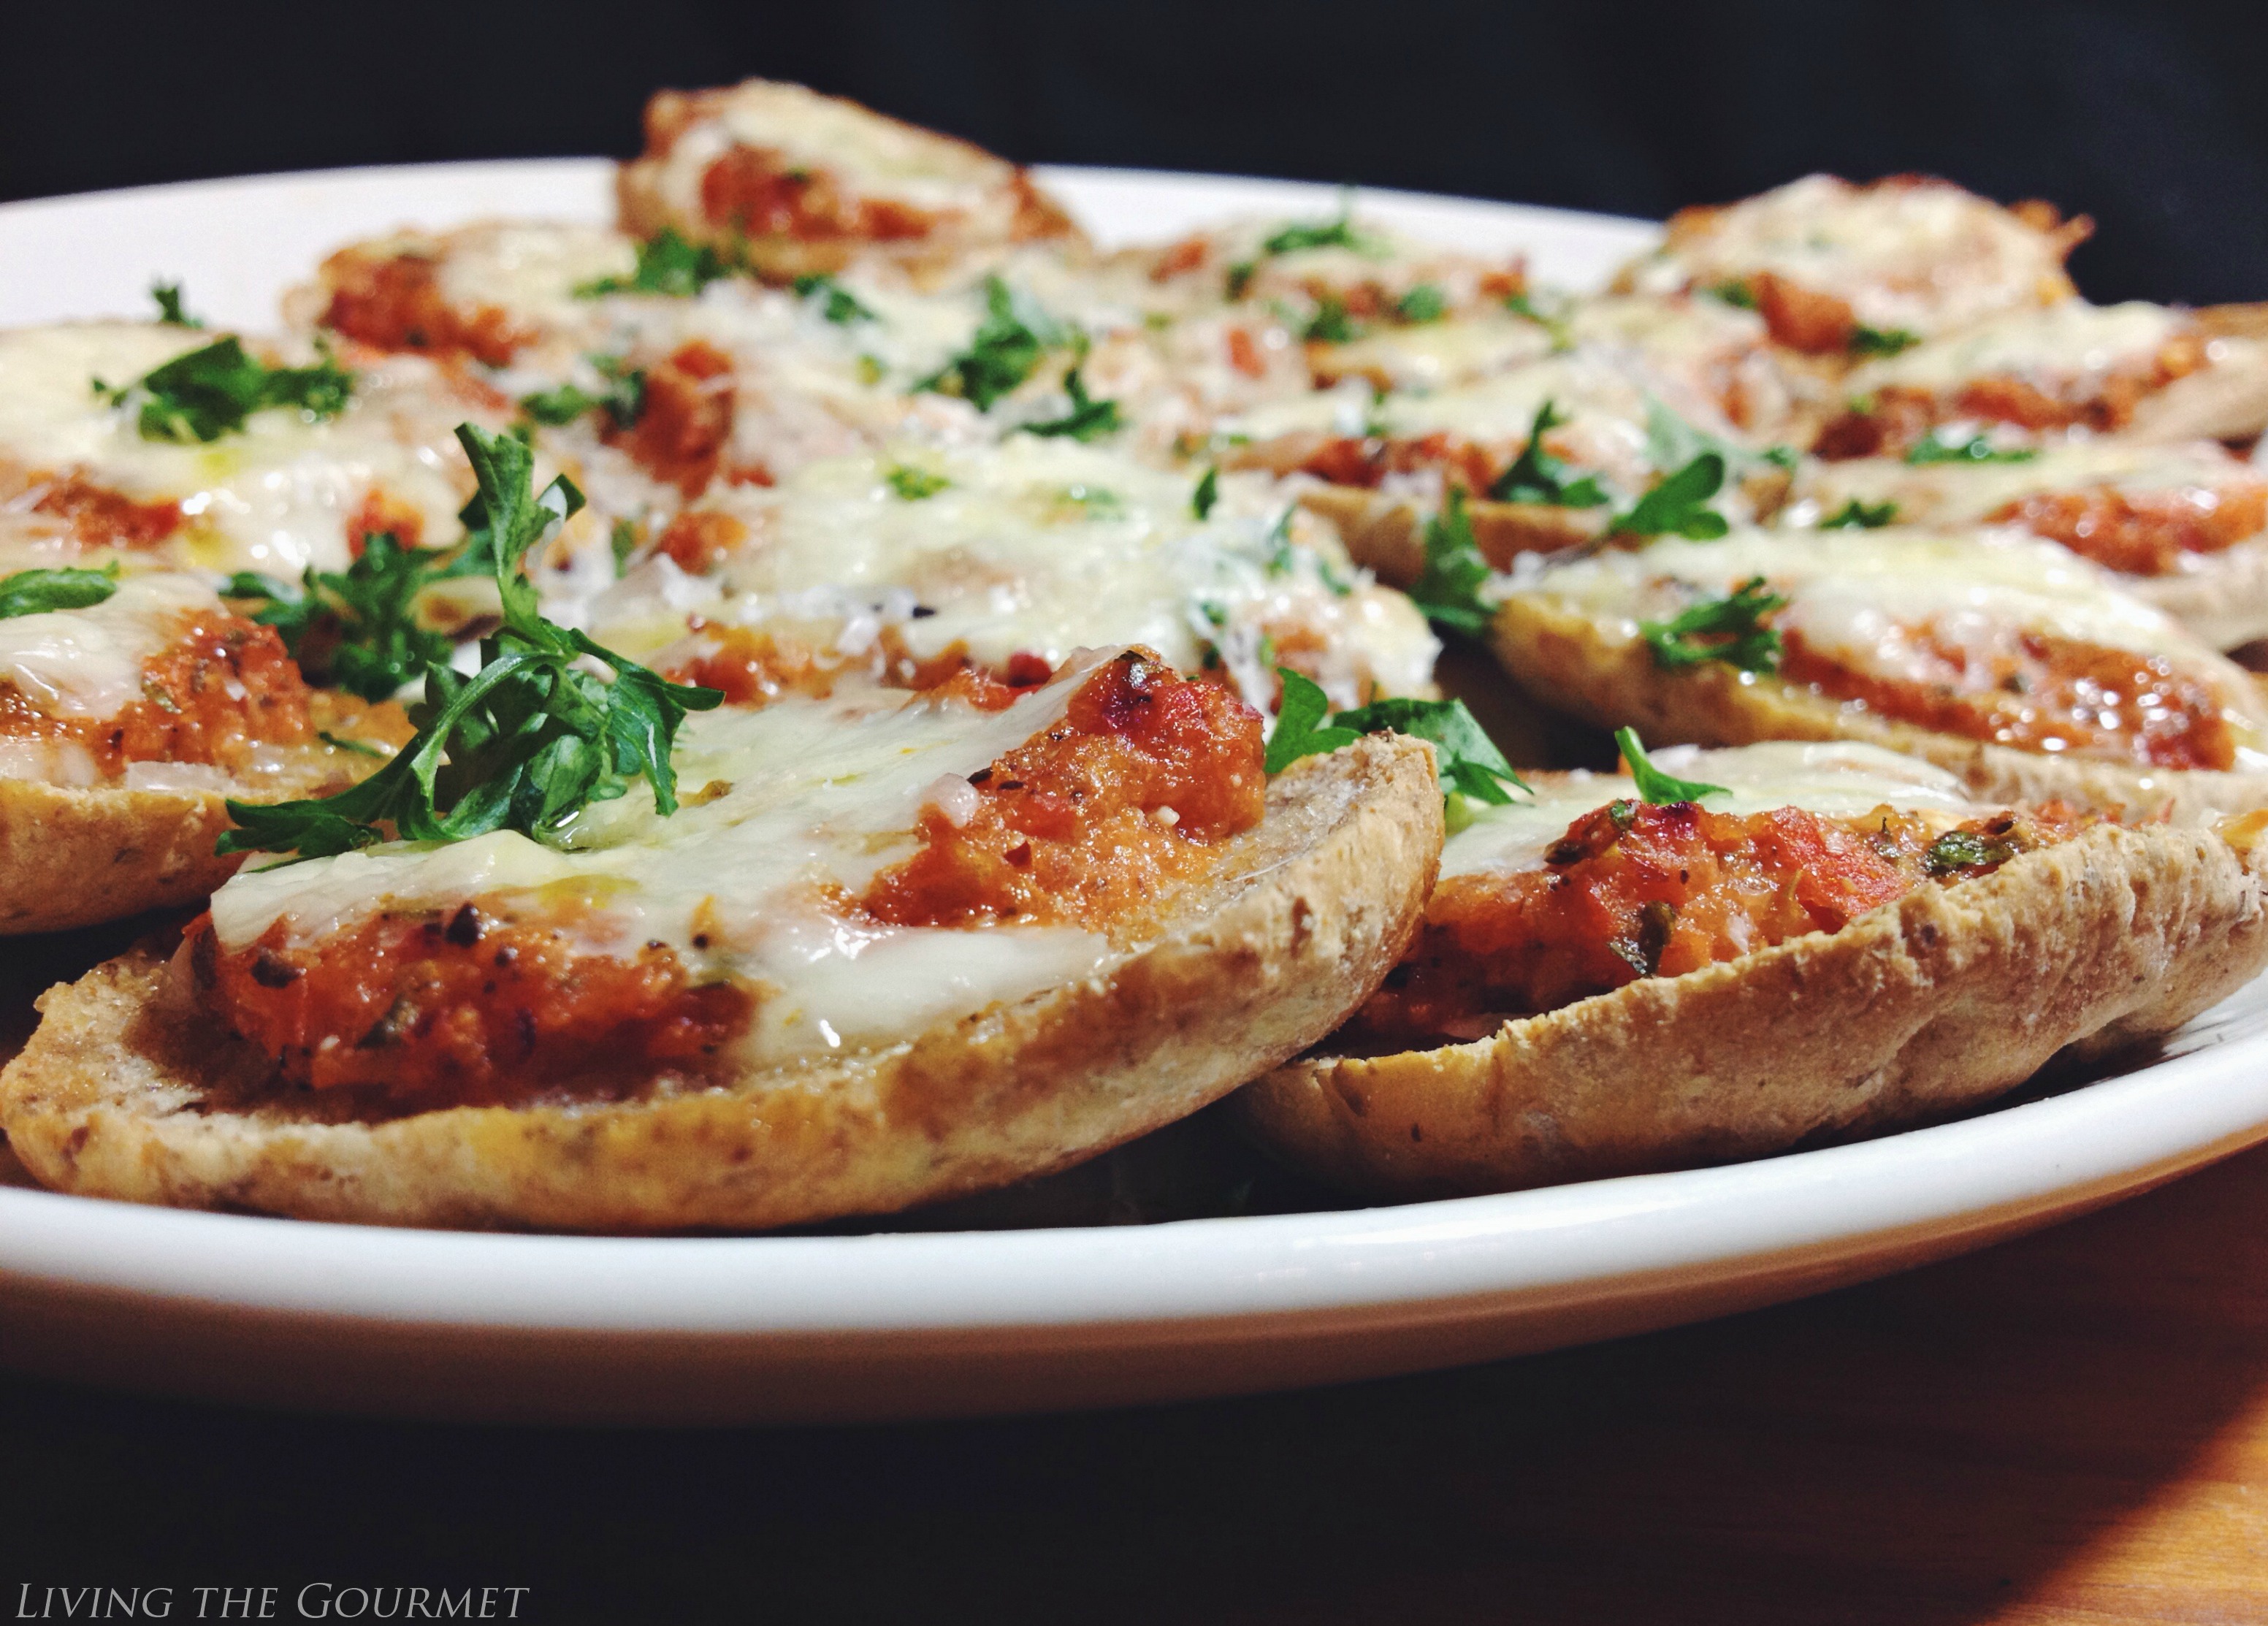 Living the Gourmet: Fresh Tomato Pizza Sliders